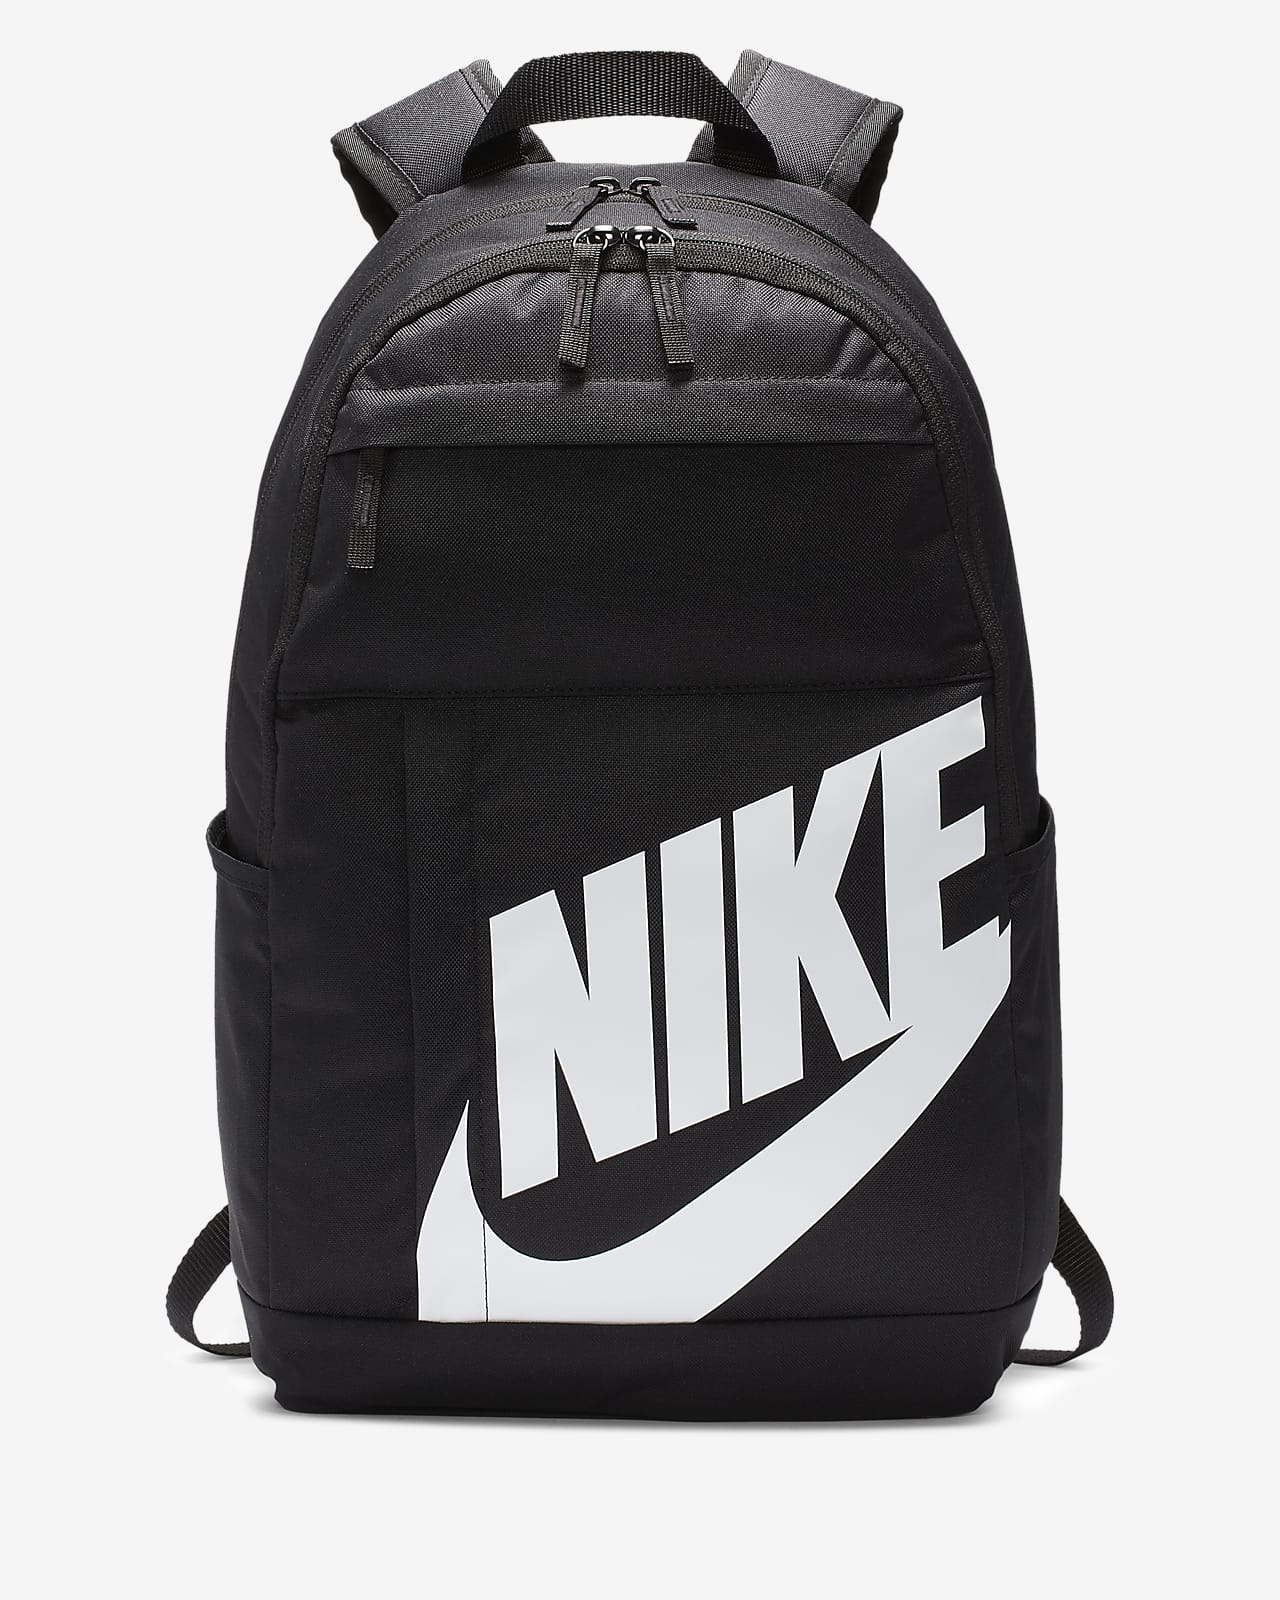 nike grey elemental backpack